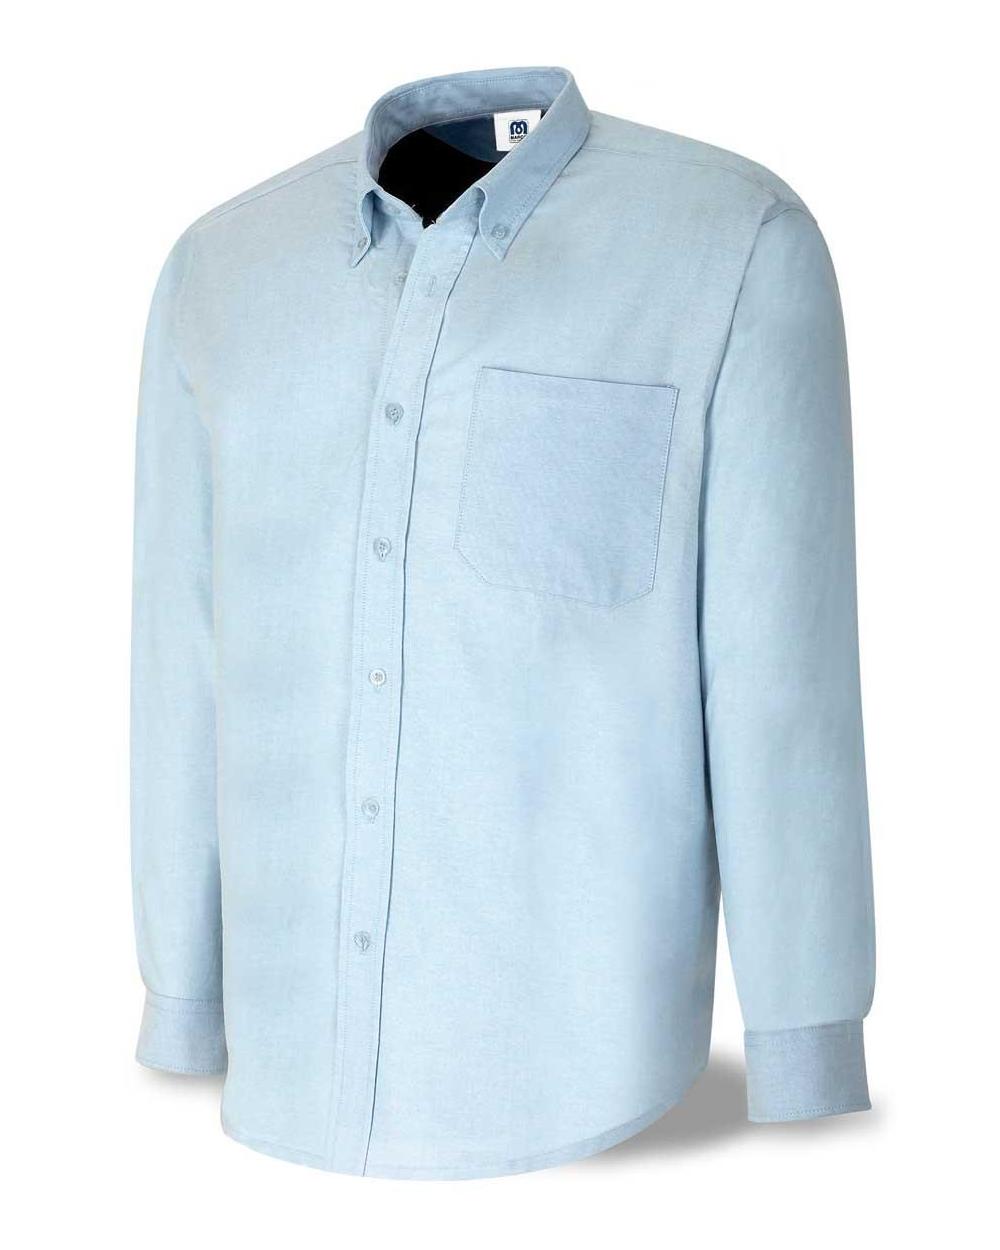 Comprar Camisa Algodón Oxford Azul 388-Coml barato